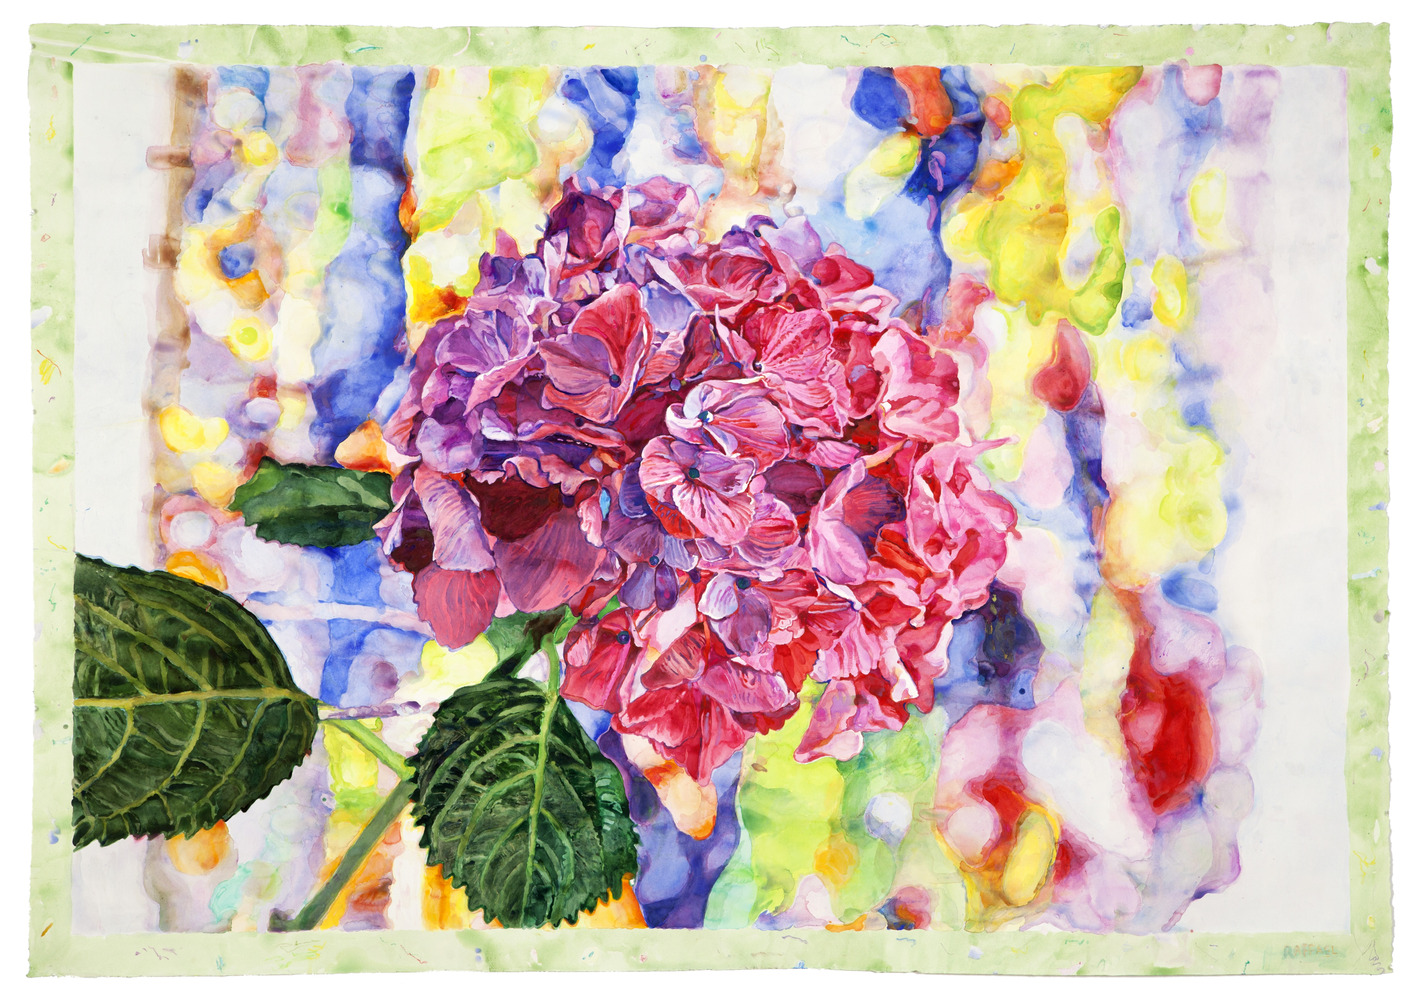 Flower Dream - watercolor on paper by Joseph Raffael